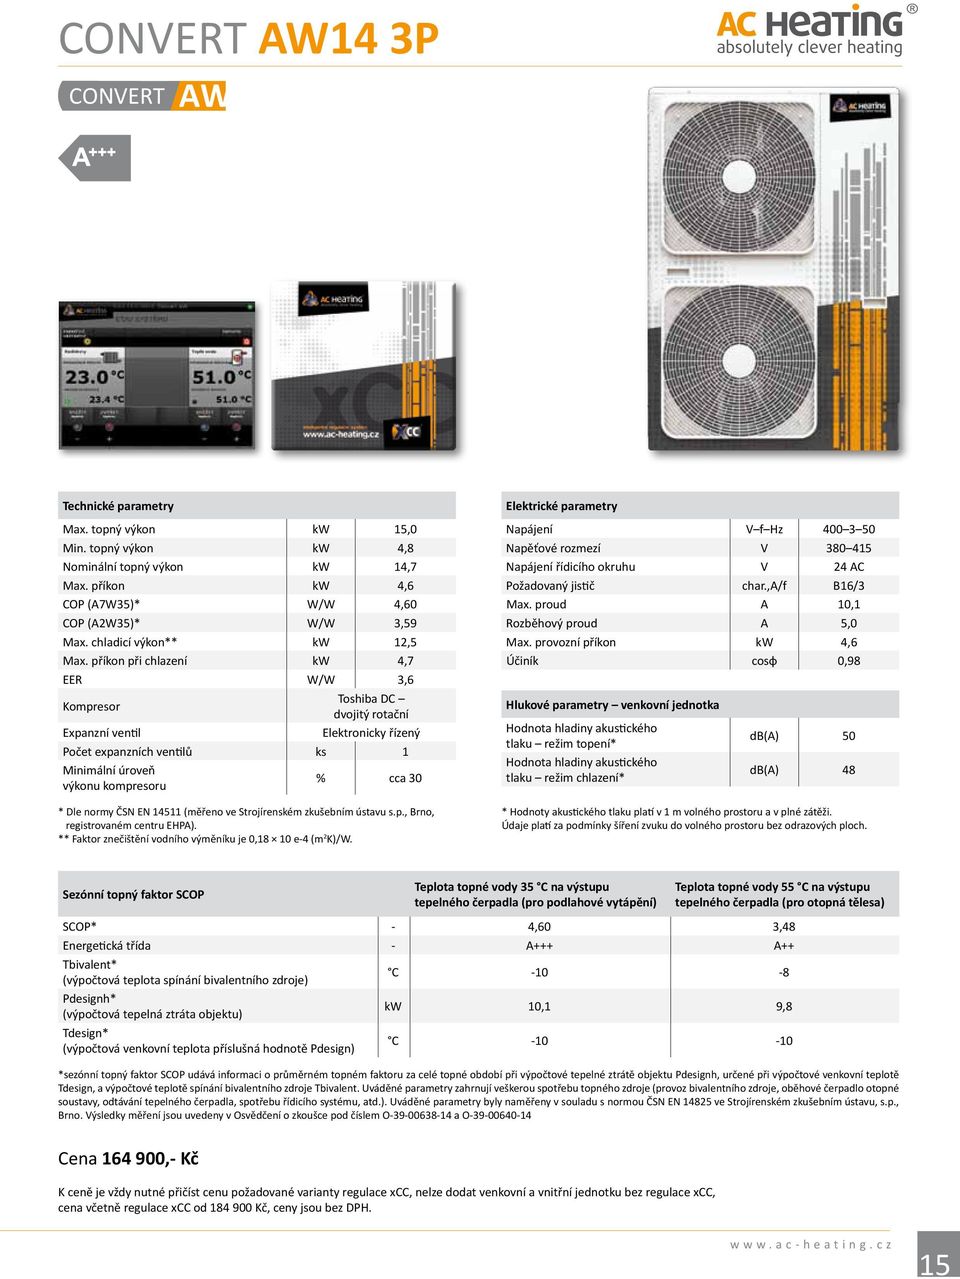 příkon při chlazení kw 4,7 EER W/W 3,6 Kompresor Toshiba DC dvojitý rotační Expanzní ventil Elektronicky řízený Počet expanzních ventilů ks 1 Minimální úroveň výkonu kompresoru % cca 30 * Dle normy